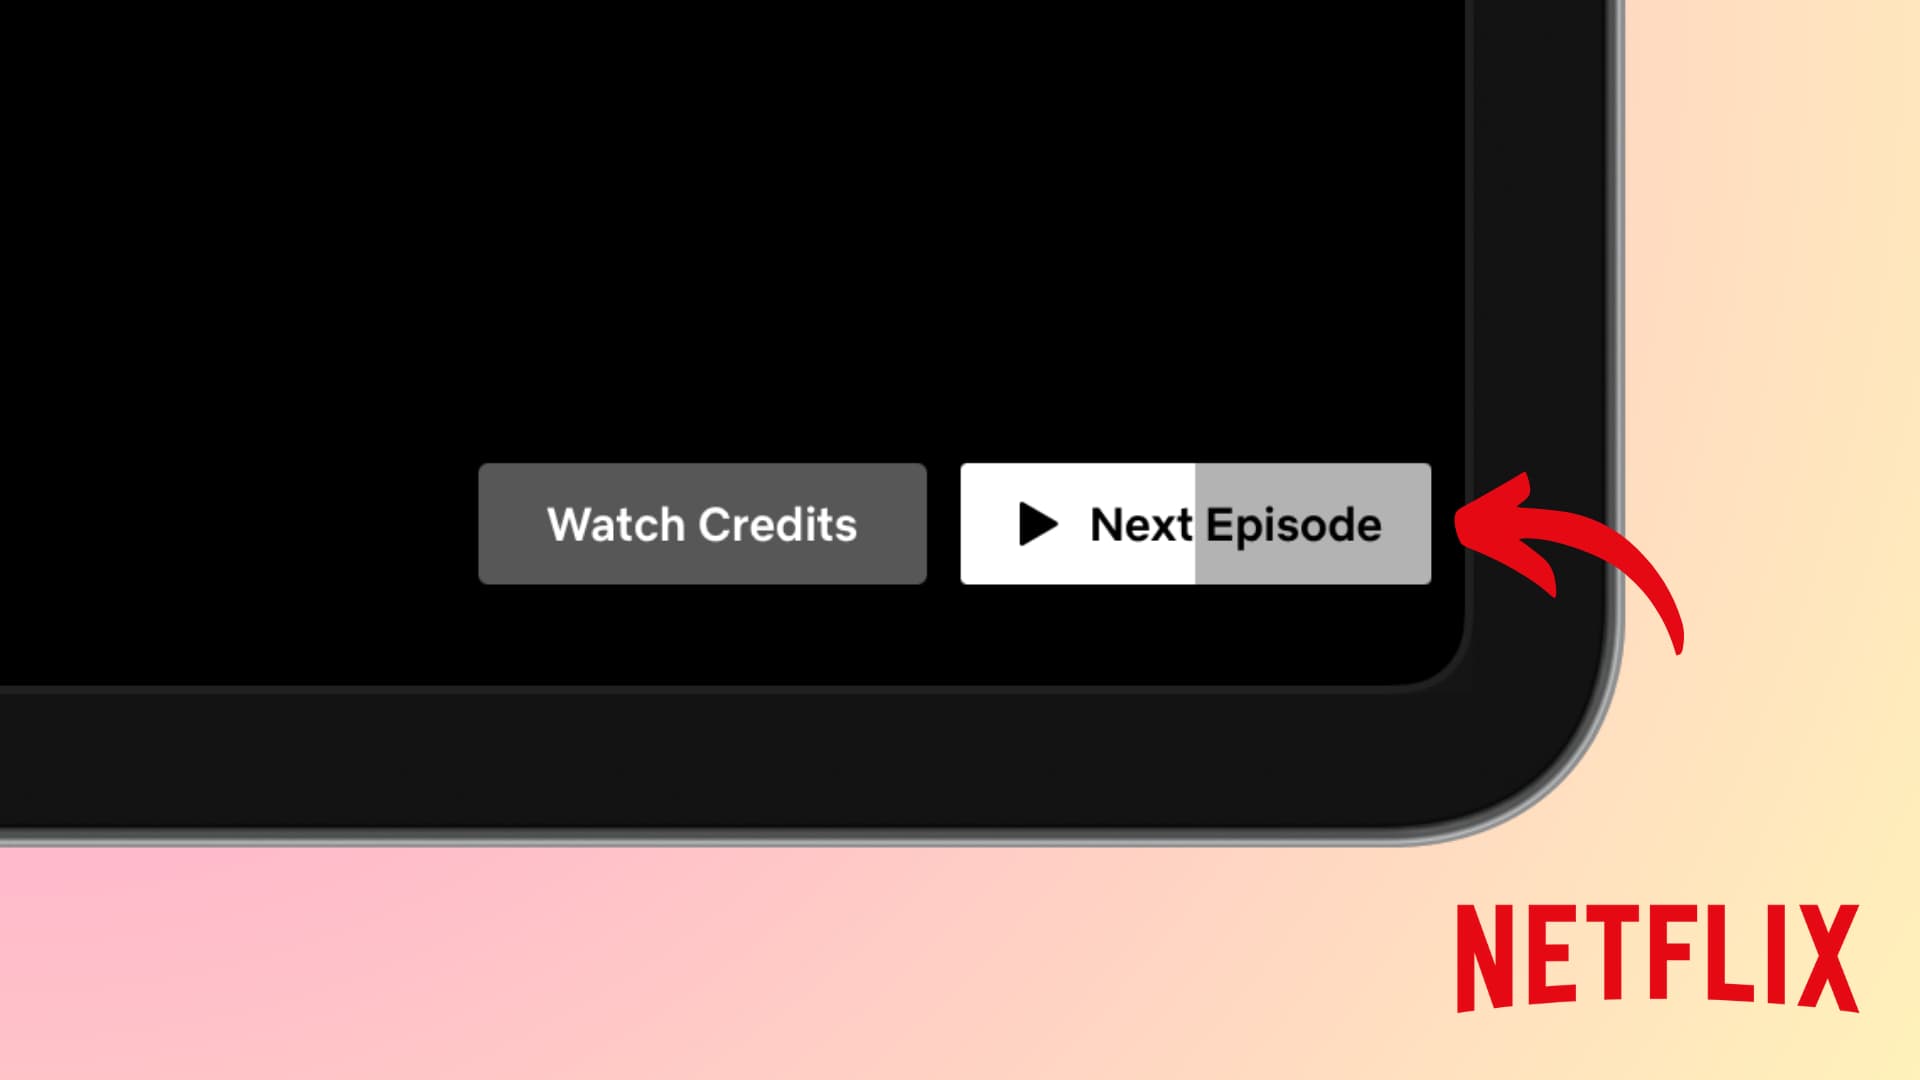 Next Episode button working on Netflix